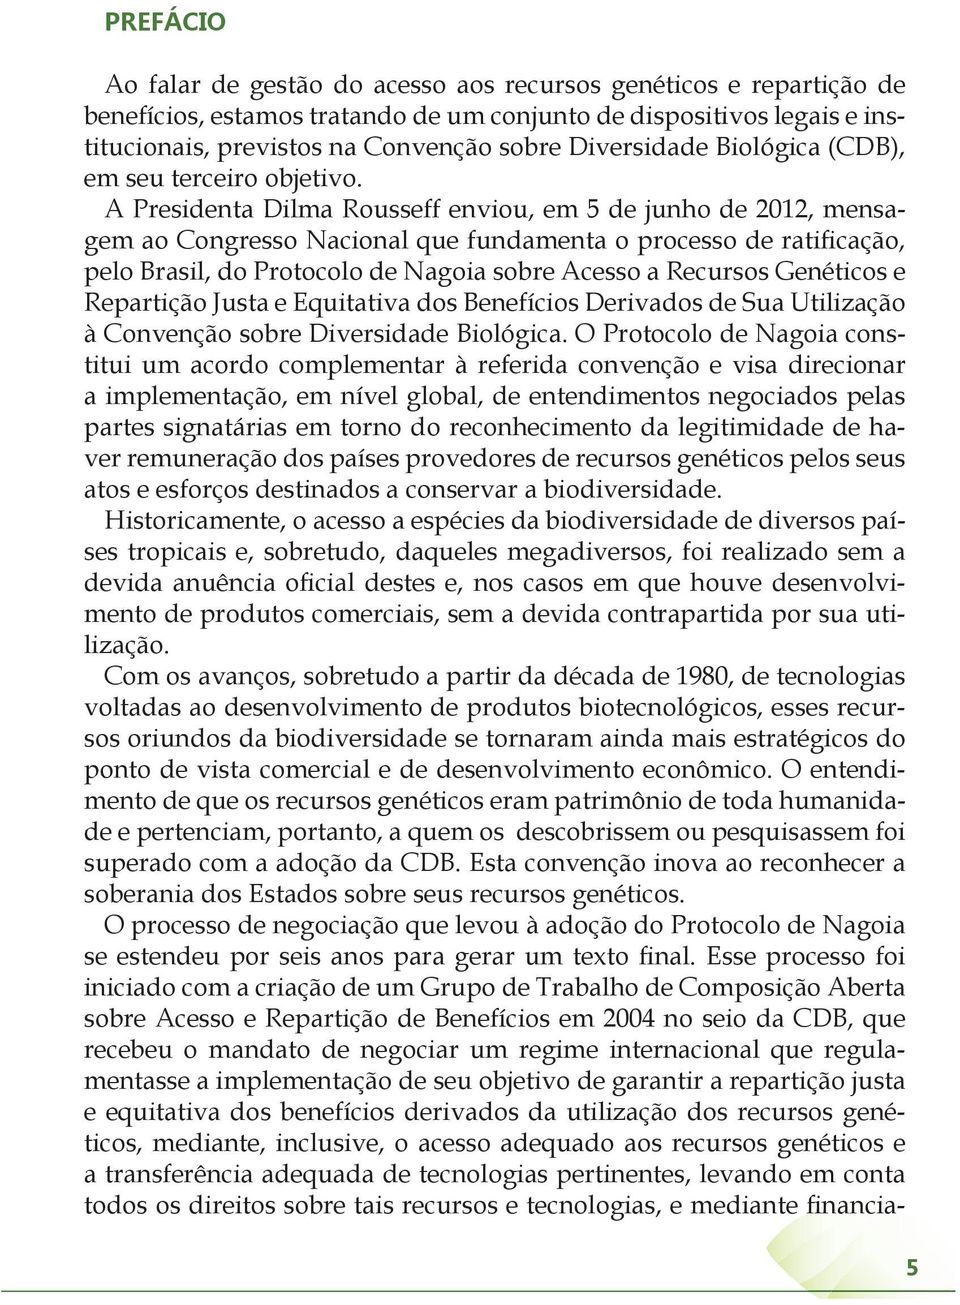 A Presidenta Dilma Rousseff enviou, em 5 de junho de 2012, mensagem ao Congresso Nacional que fundamenta o processo de ratificação, pelo Brasil, do Protocolo de Nagoia sobre Acesso a Recursos